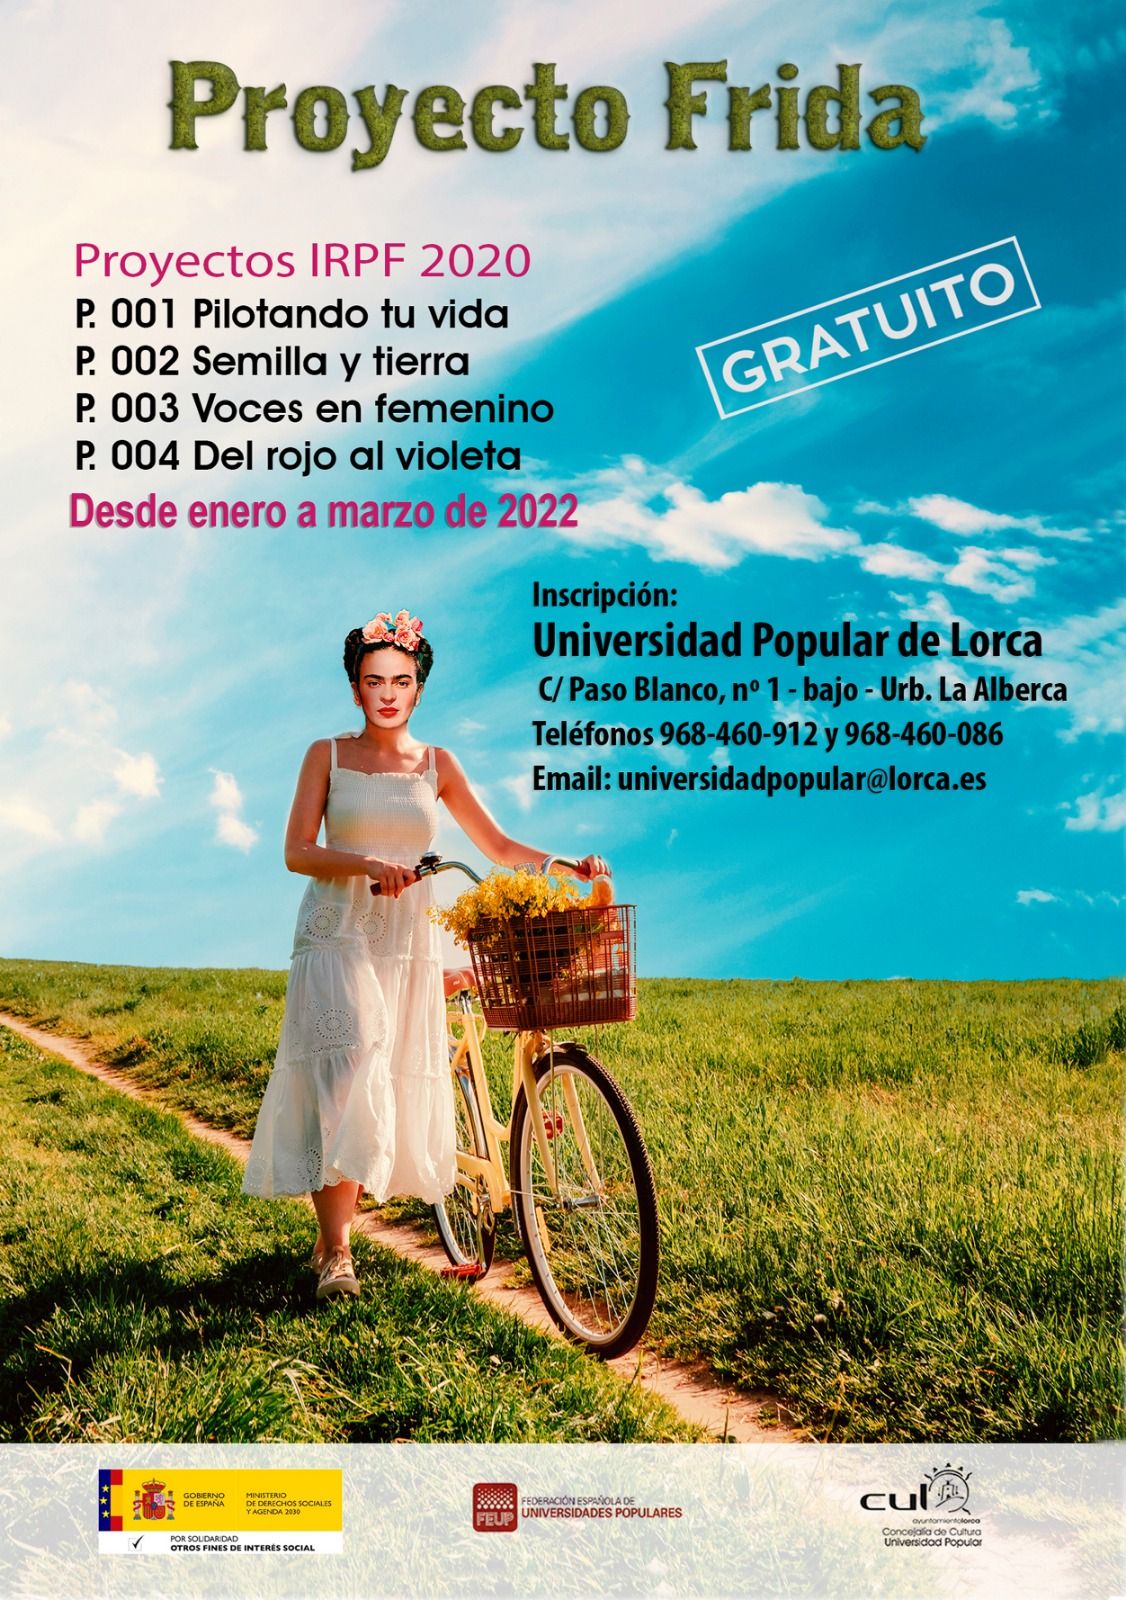 Cartel del Proyecto Frida con los cuatro programas.